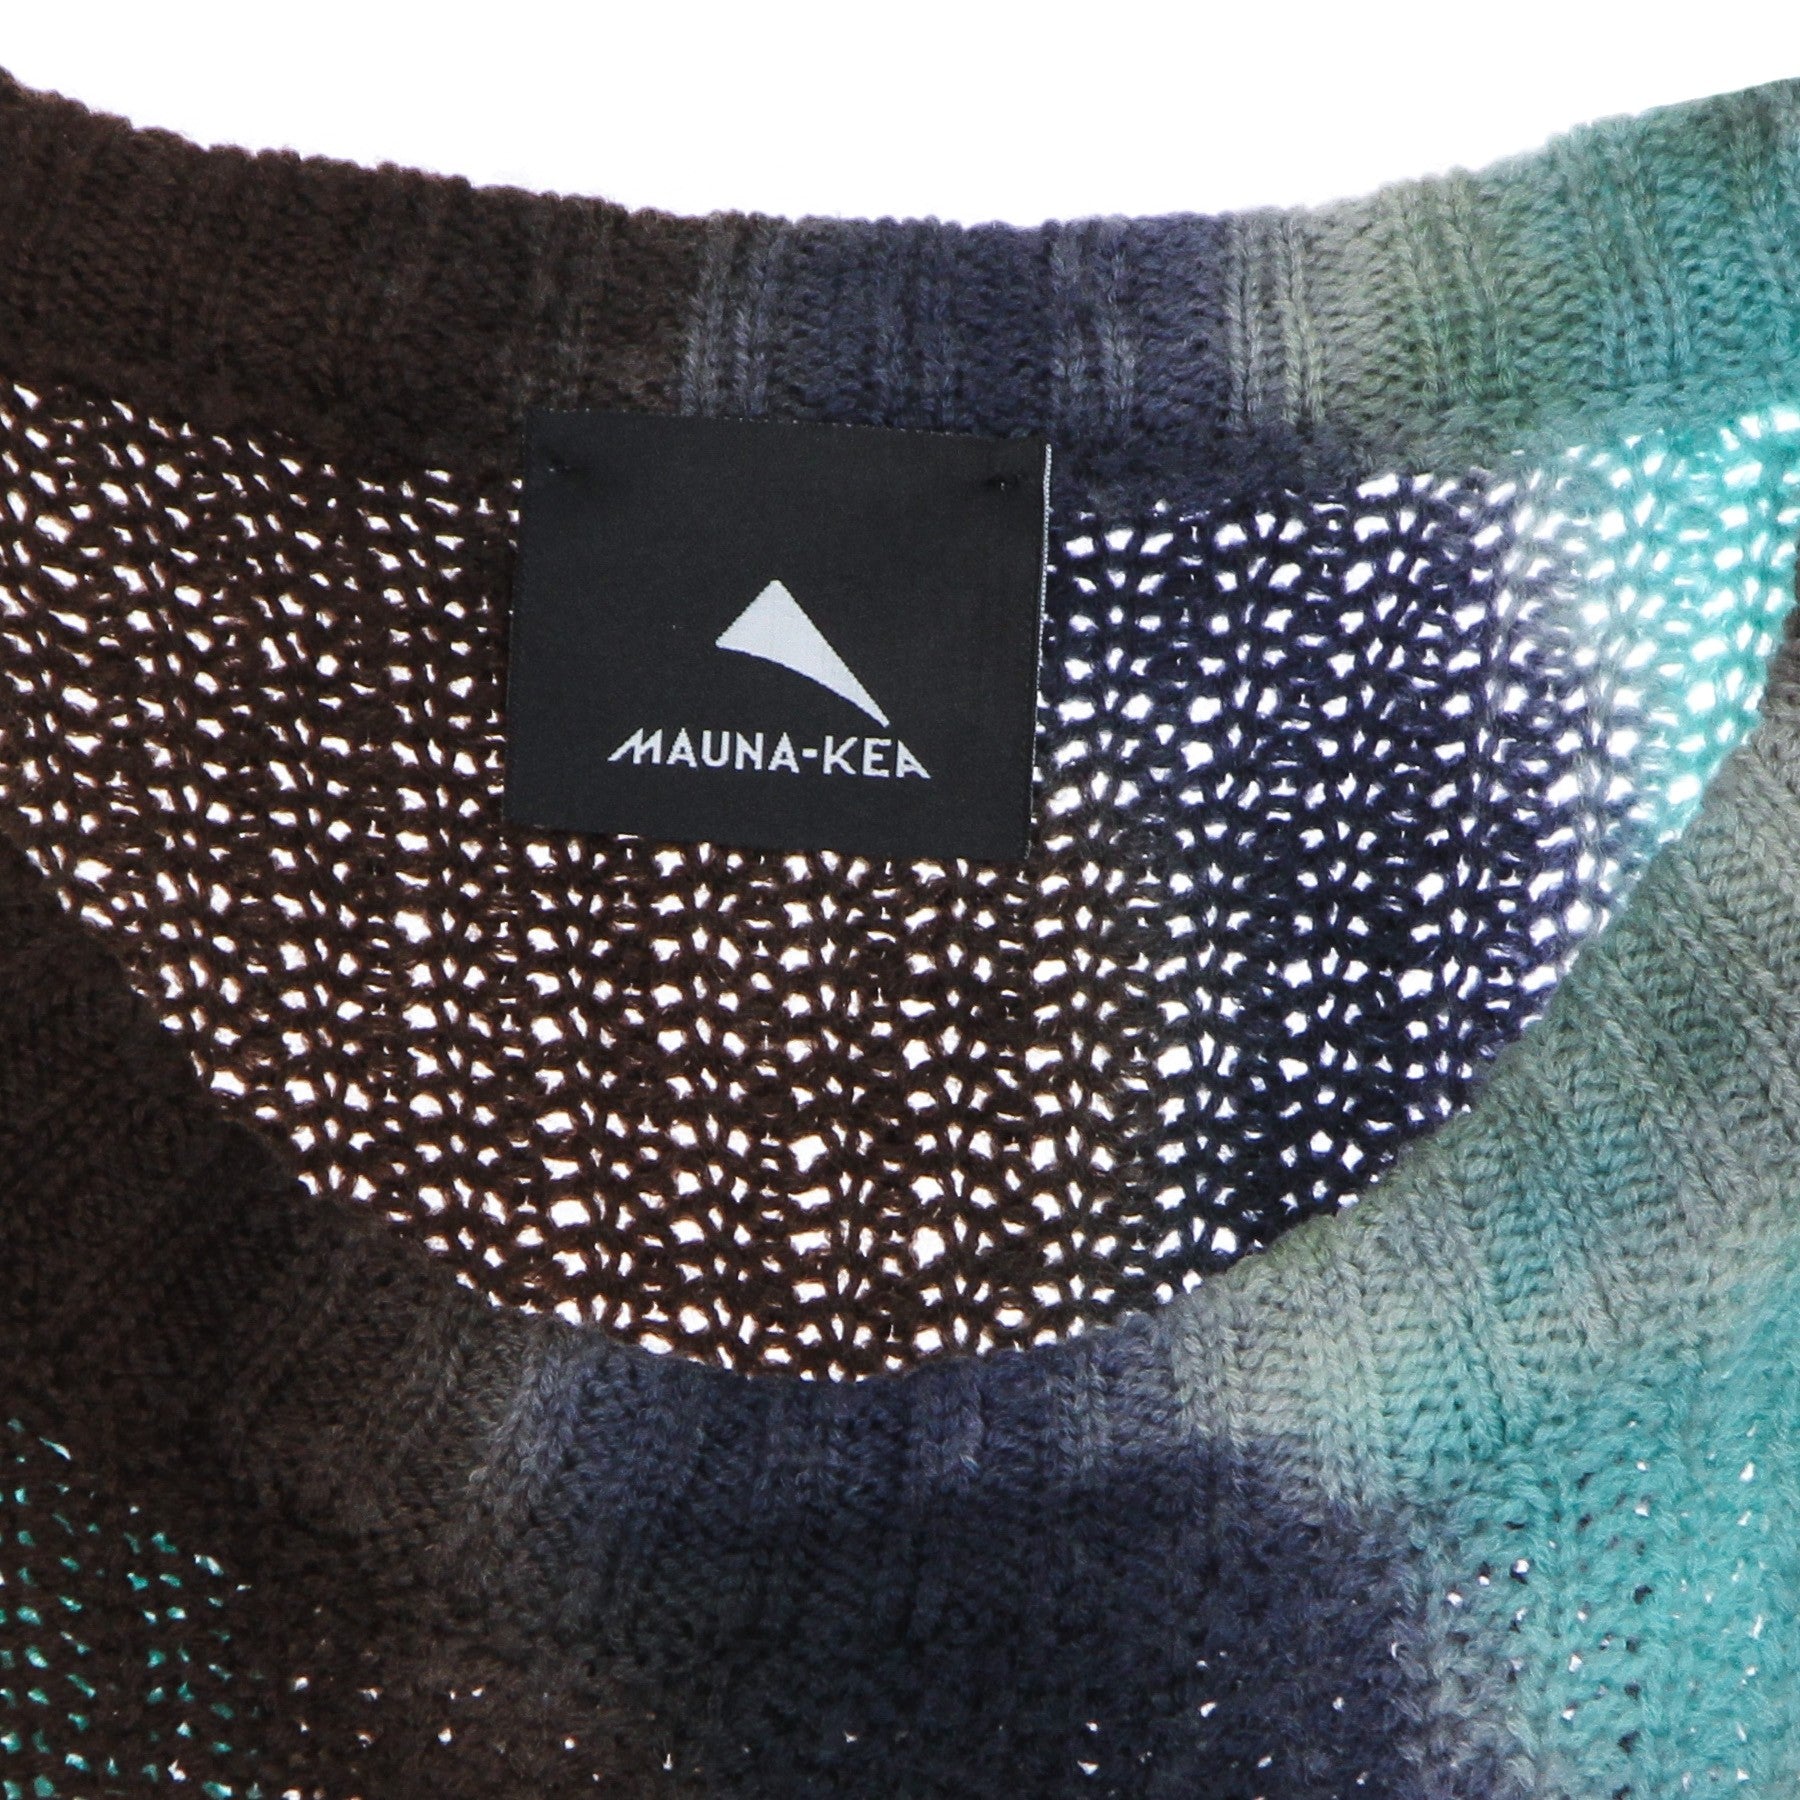 Mauna-kea, Maglione Uomo Multicolor Sweater, 